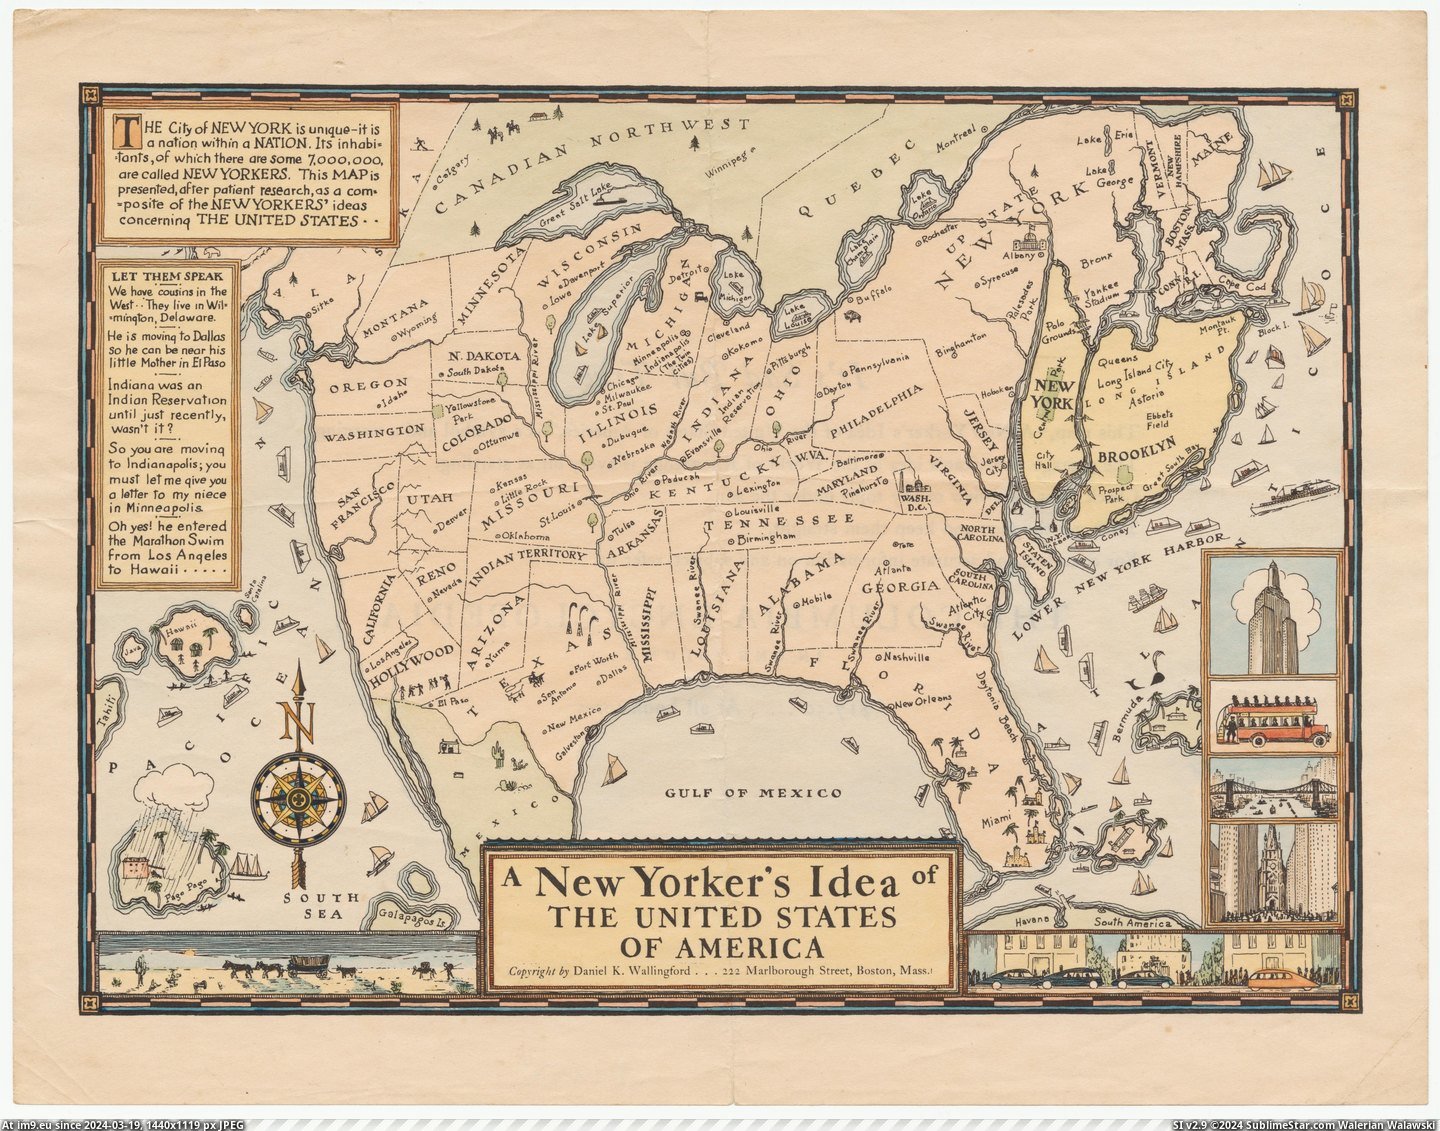 #States #America #Idea #United [Mapporn] A New Yorker's Idea of the United States of America (1936) [6677x5202] Pic. (Bild von album My r/MAPS favs))